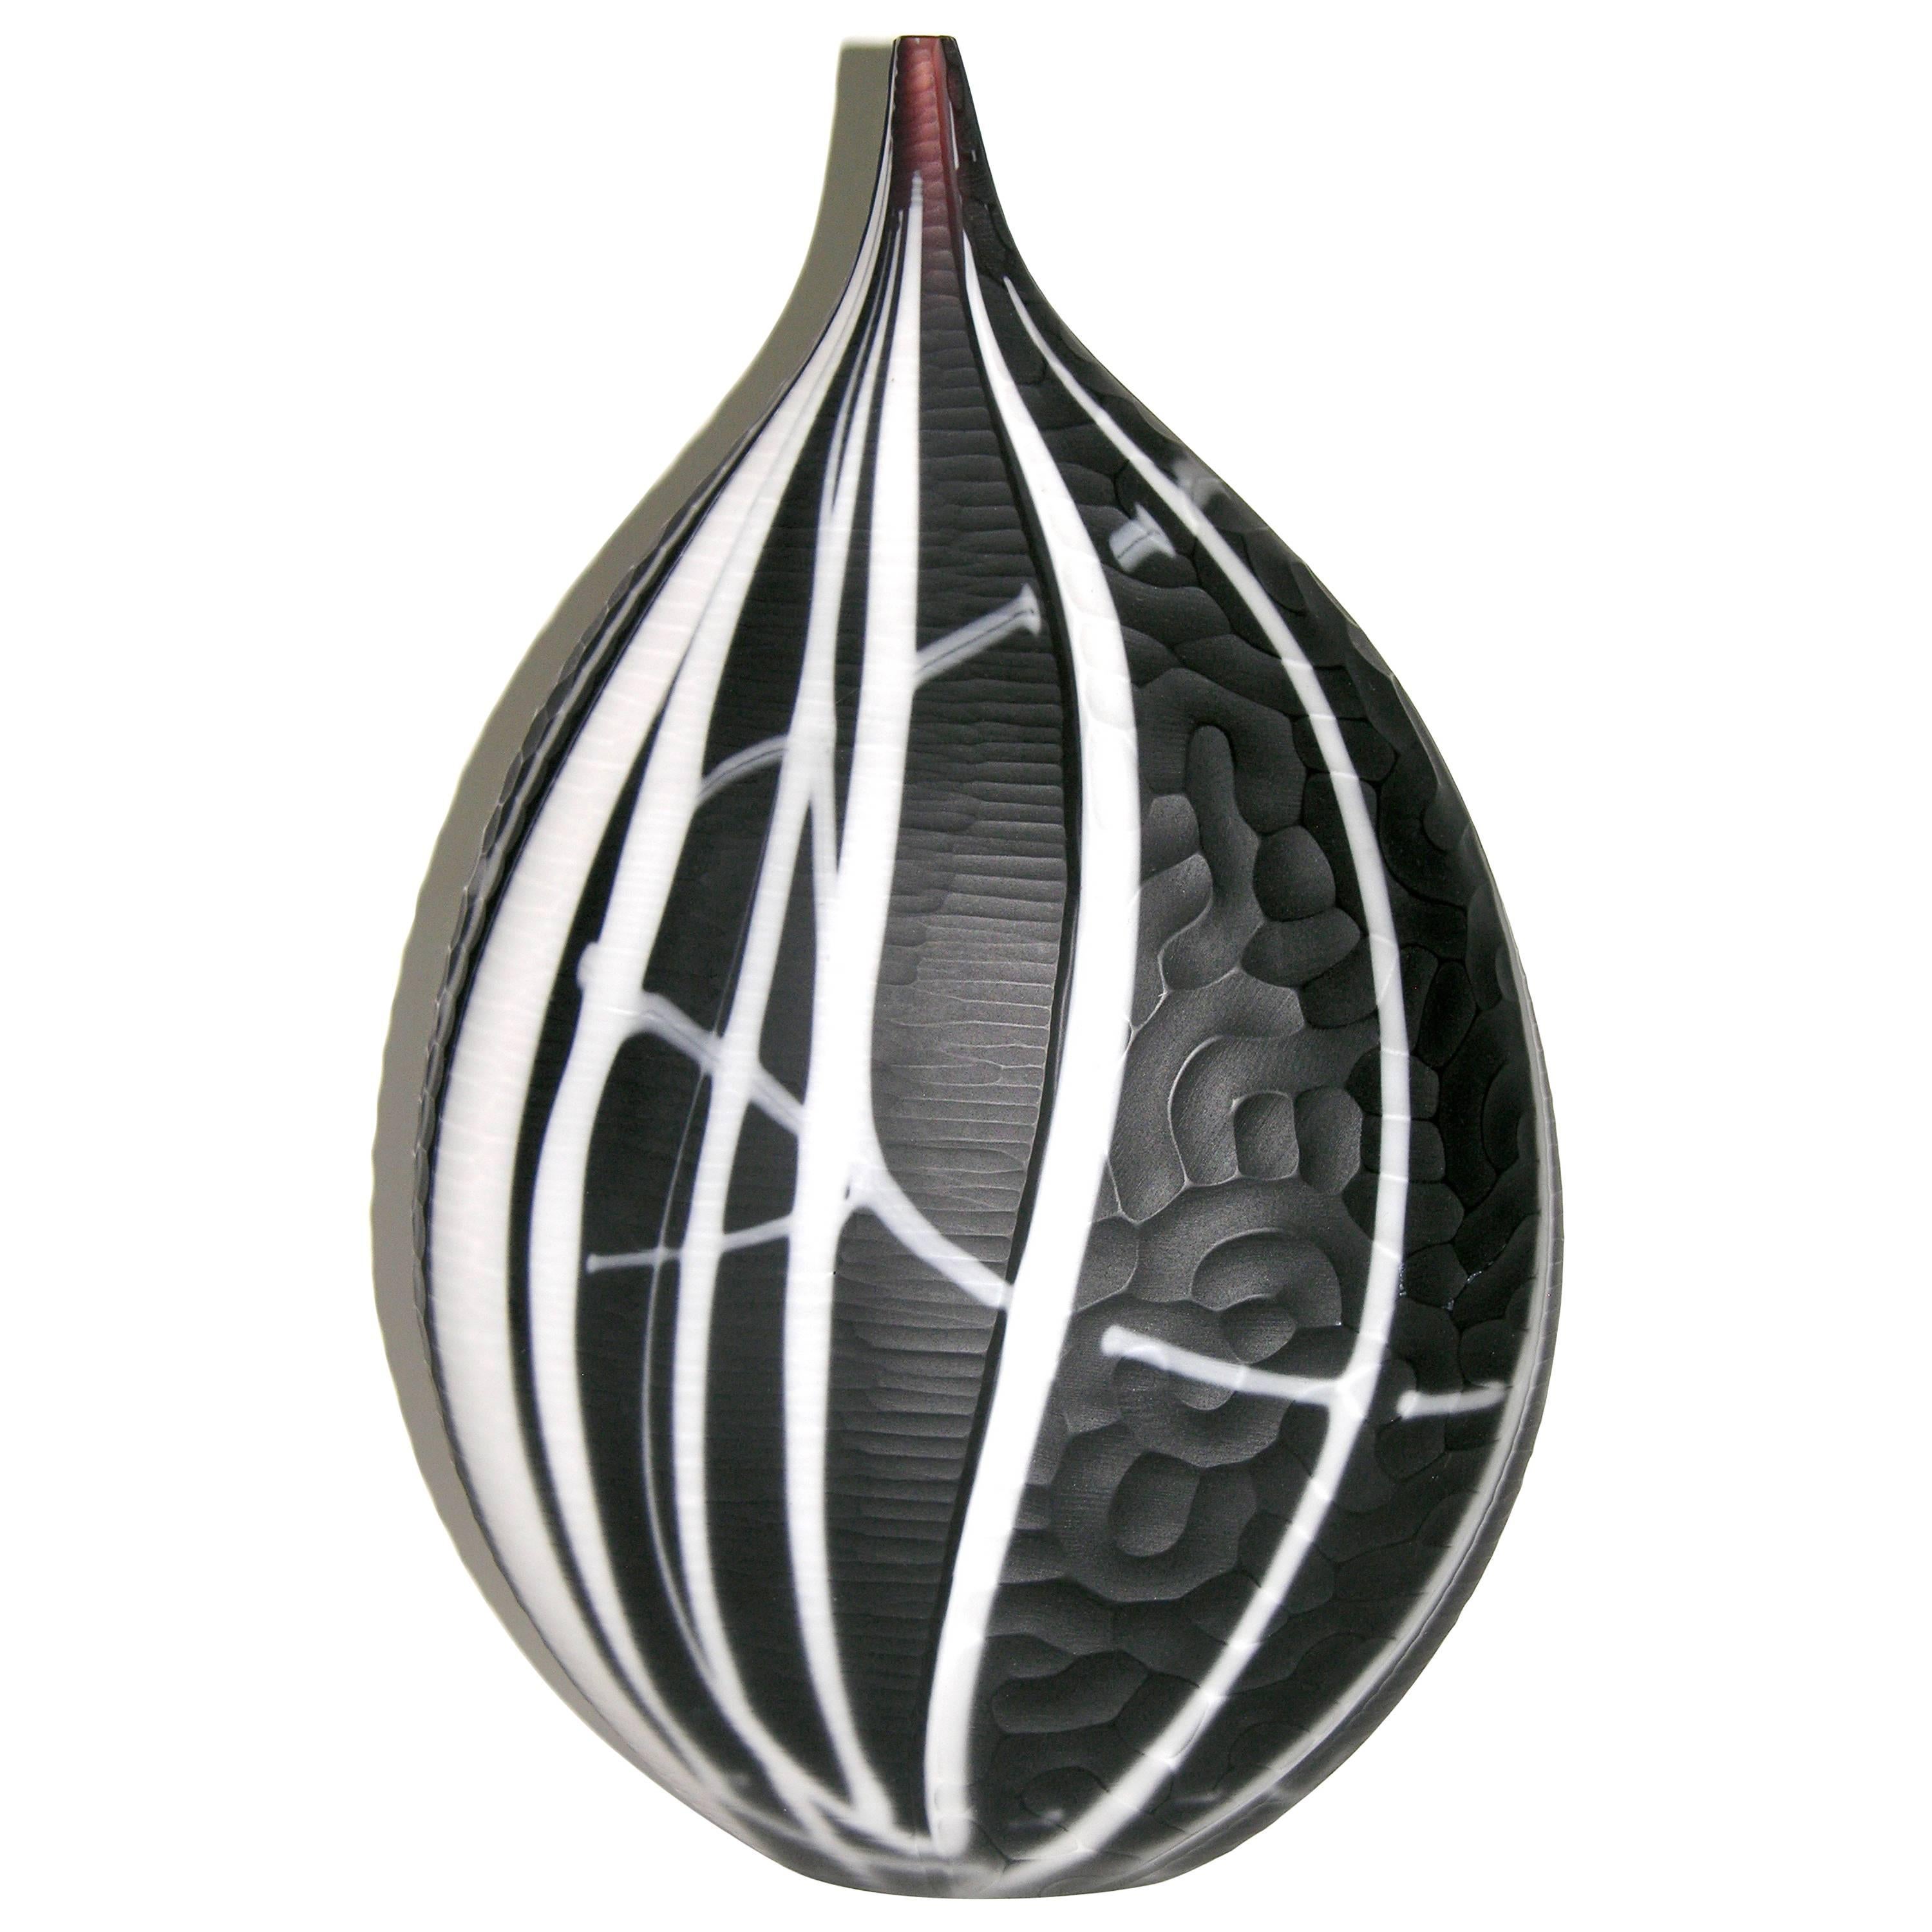 Alberto Dona 1980s Italian Modern Purple Black and White Murano Art Glass Vase